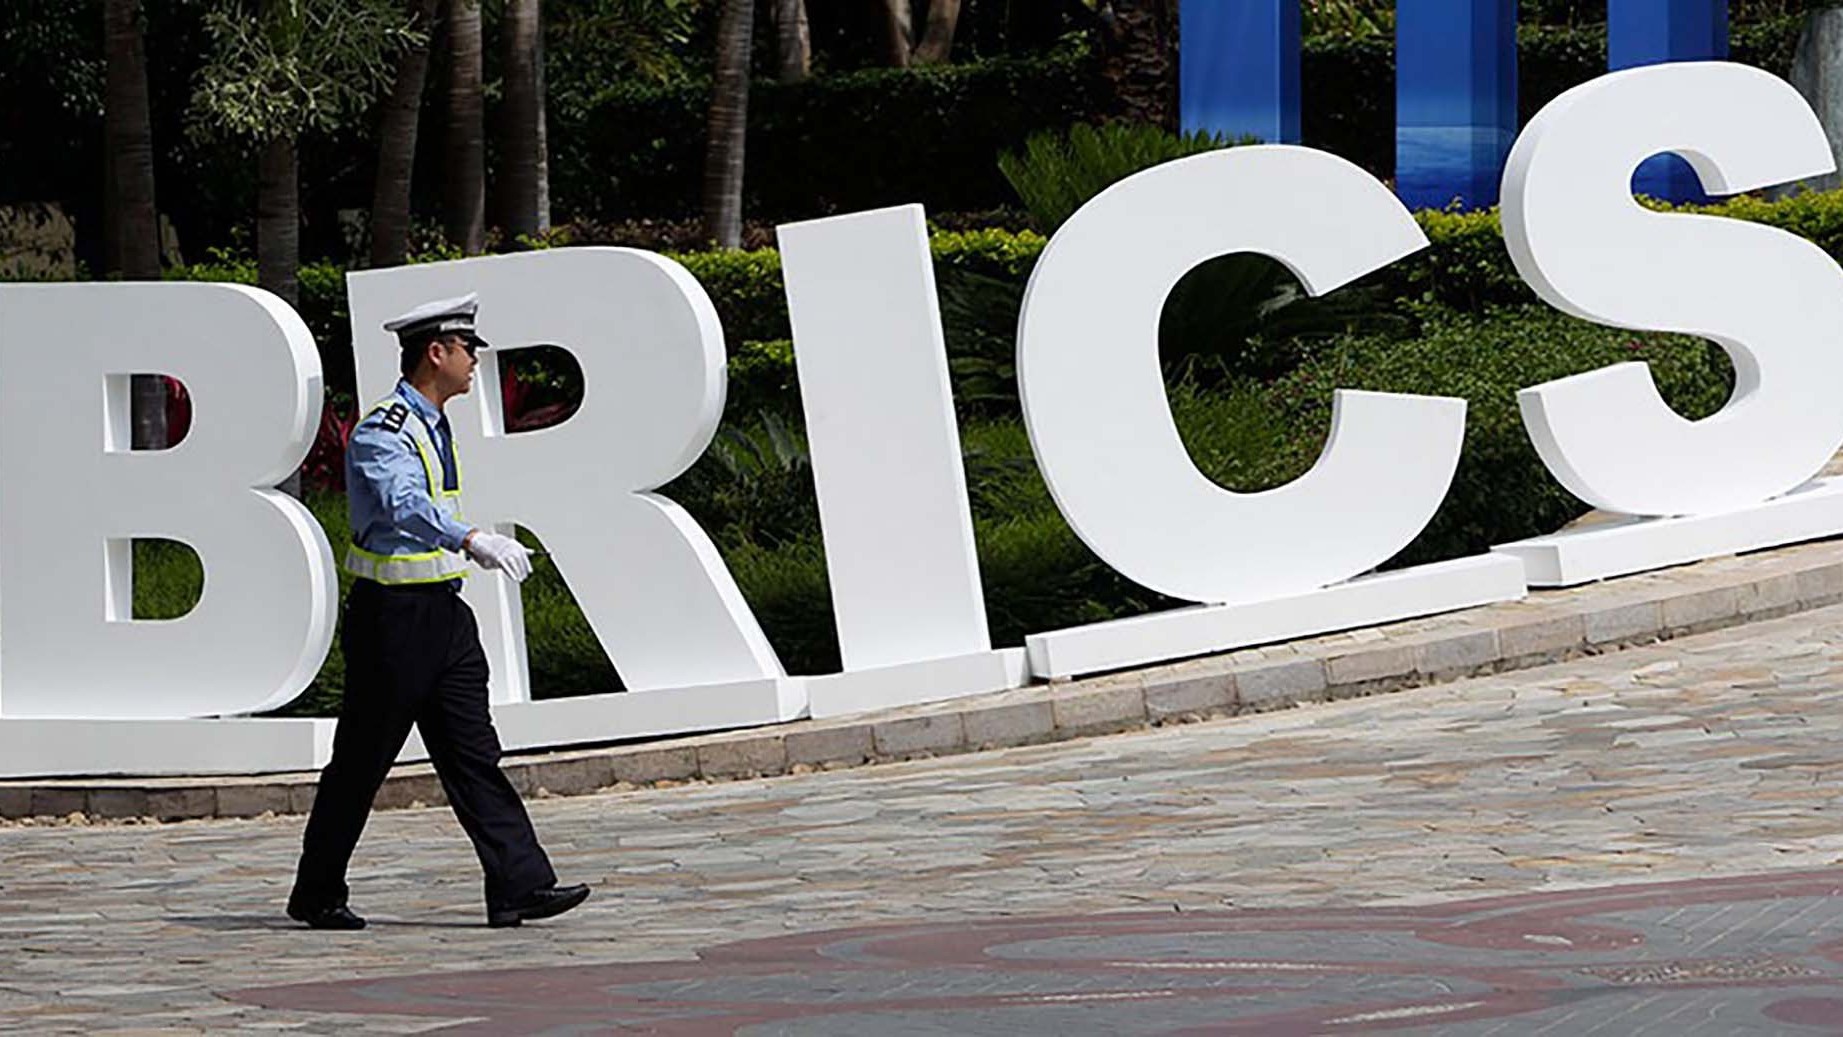 Chuyên gia: BRICS đang trở nên đặc biệt hấp dẫn, 20 quốc gia muốn gia nhập